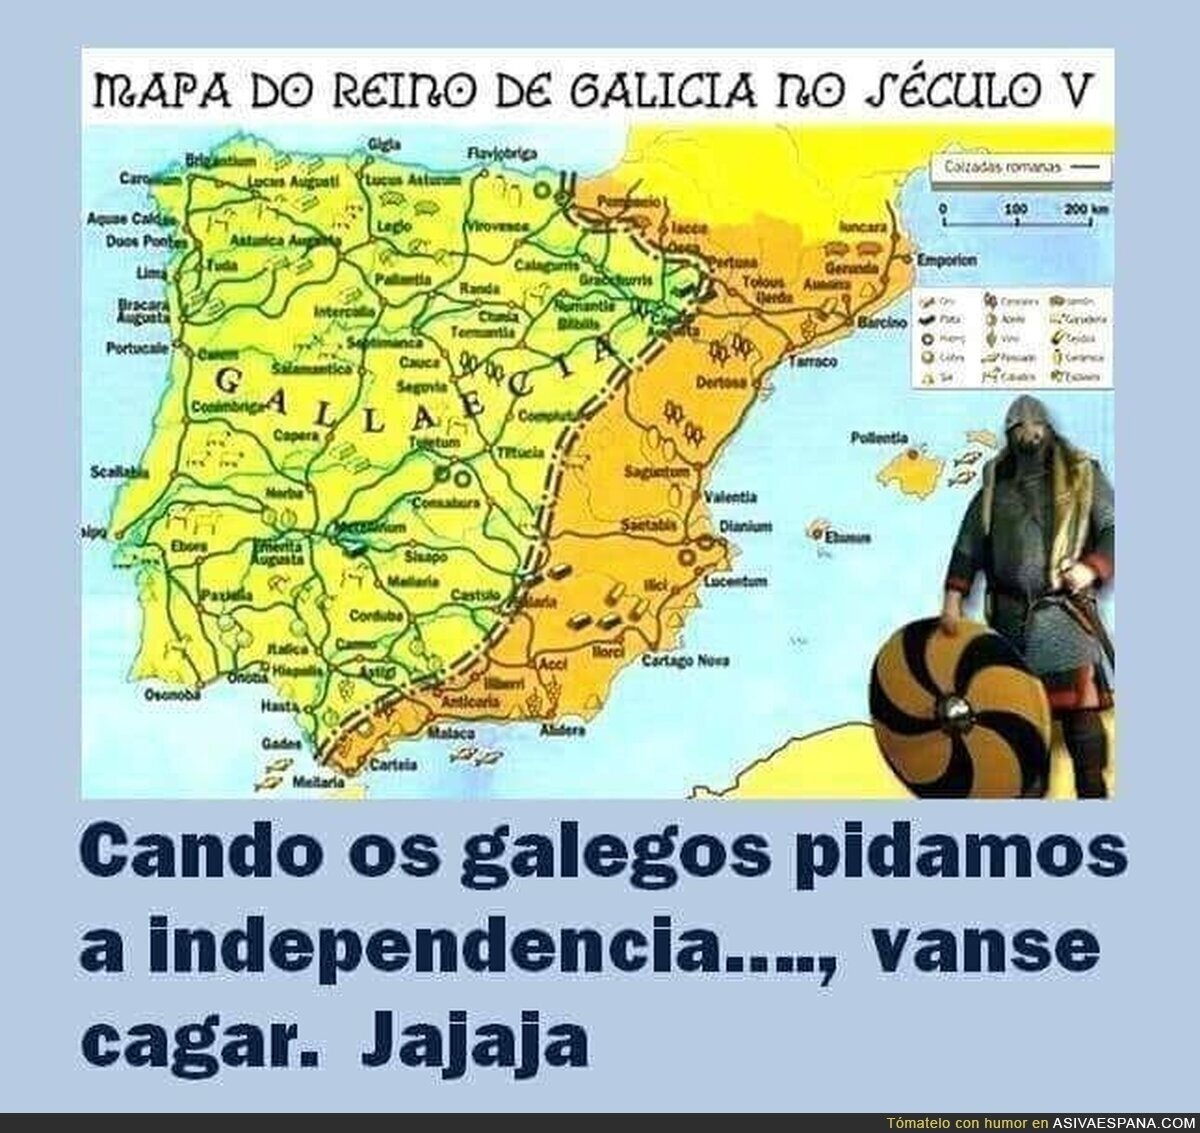 Galicia y la independencia